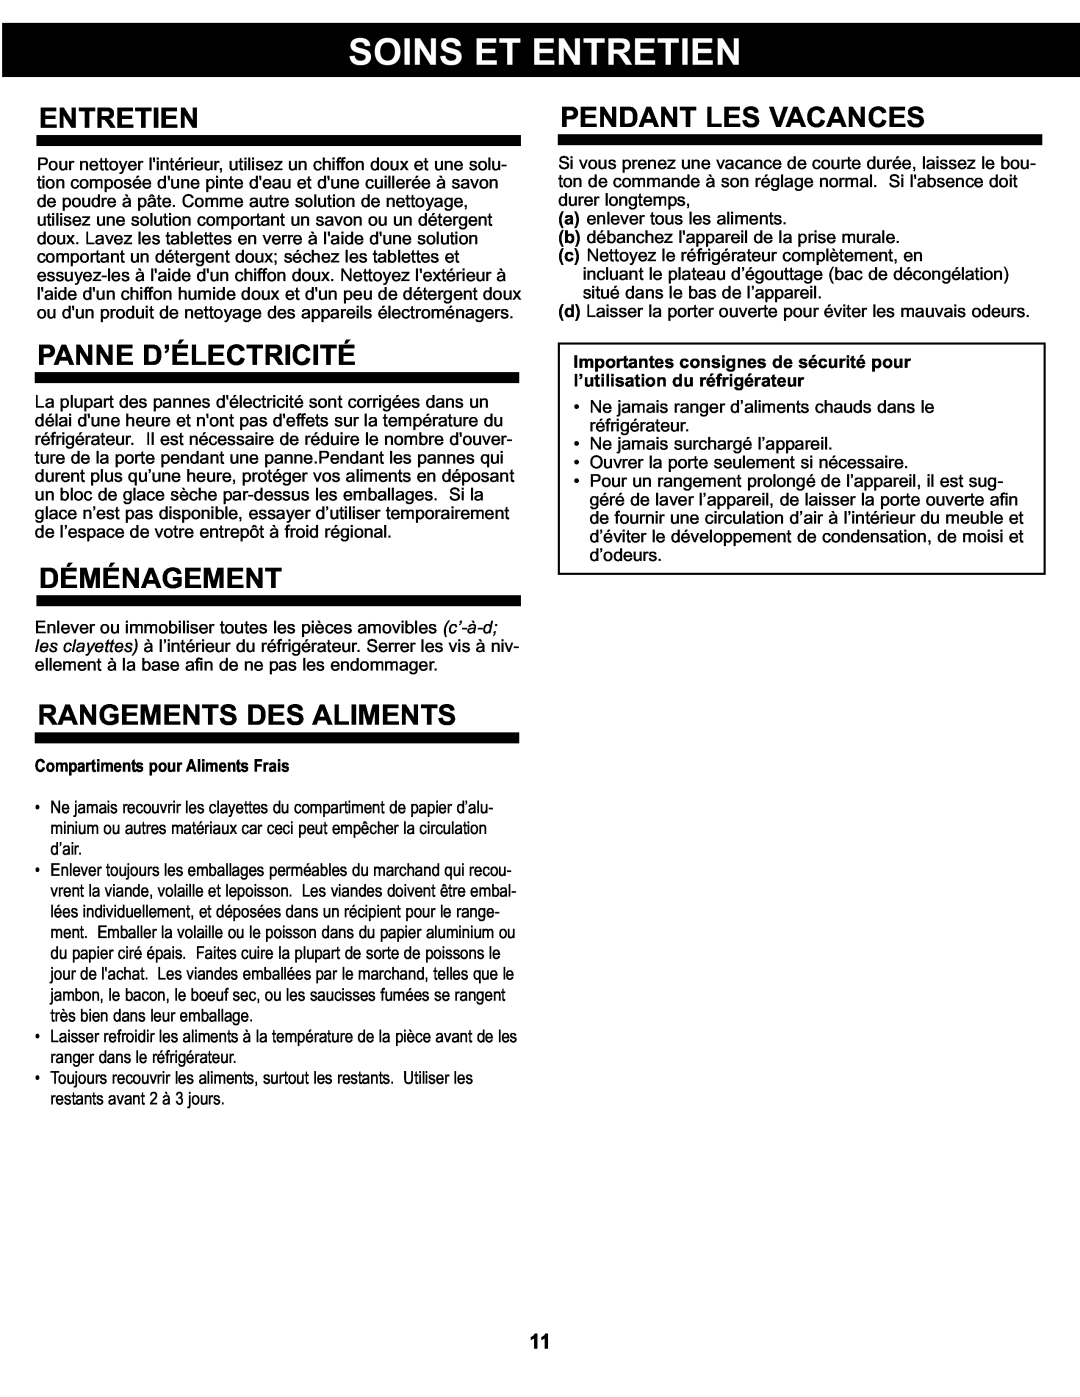 Sunbeam SBCR91BSL manual Entretien, Pendant Les Vacances, Panne D’Électricité, Déménagement, Rangements Des Aliments 